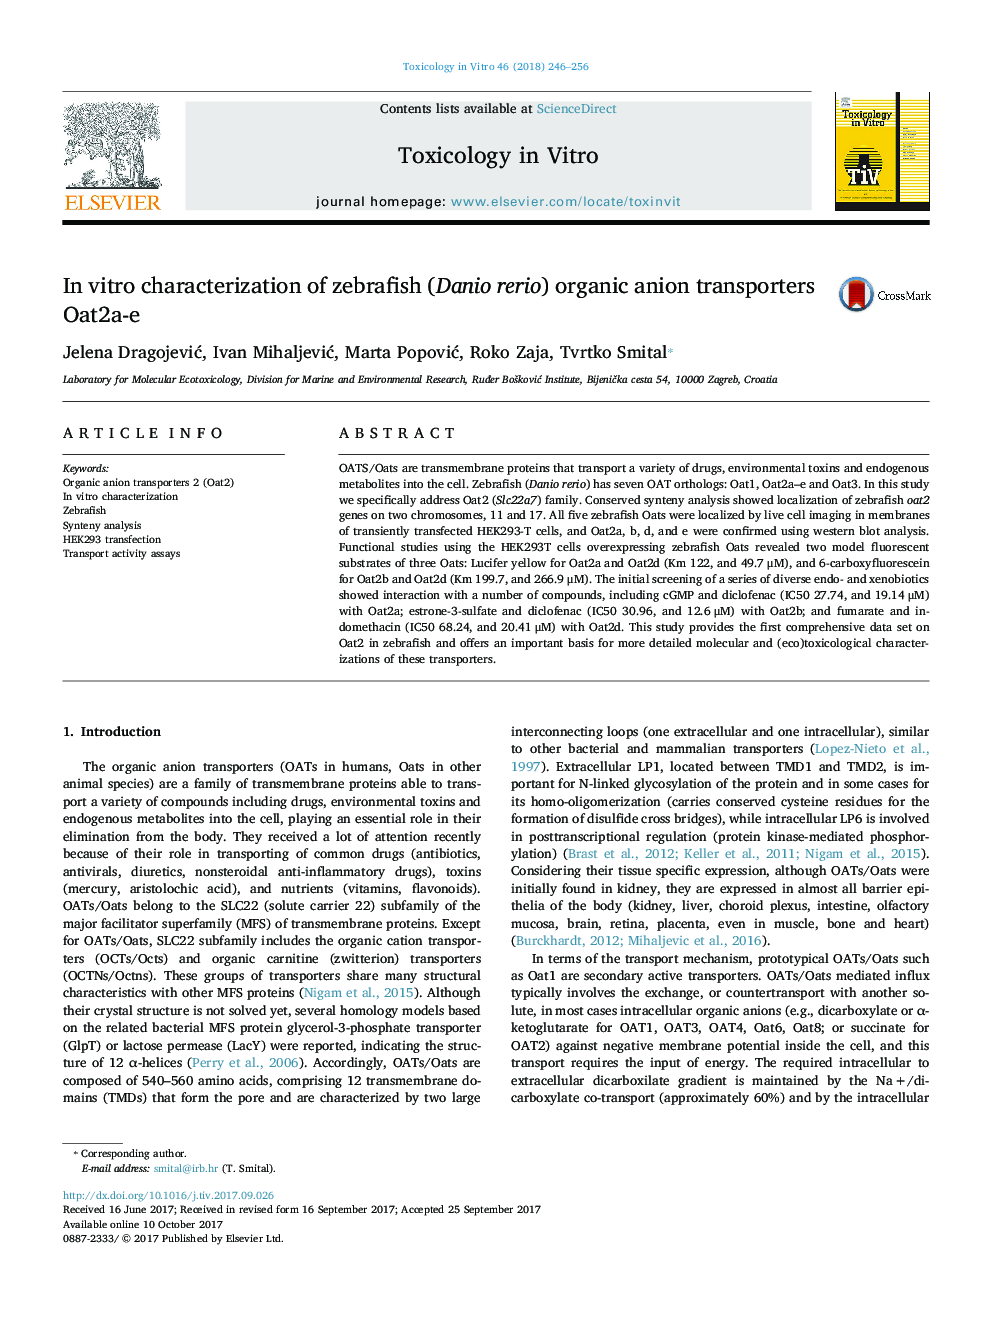 In vitro characterization of zebrafish (Danio rerio) organic anion transporters Oat2a-e